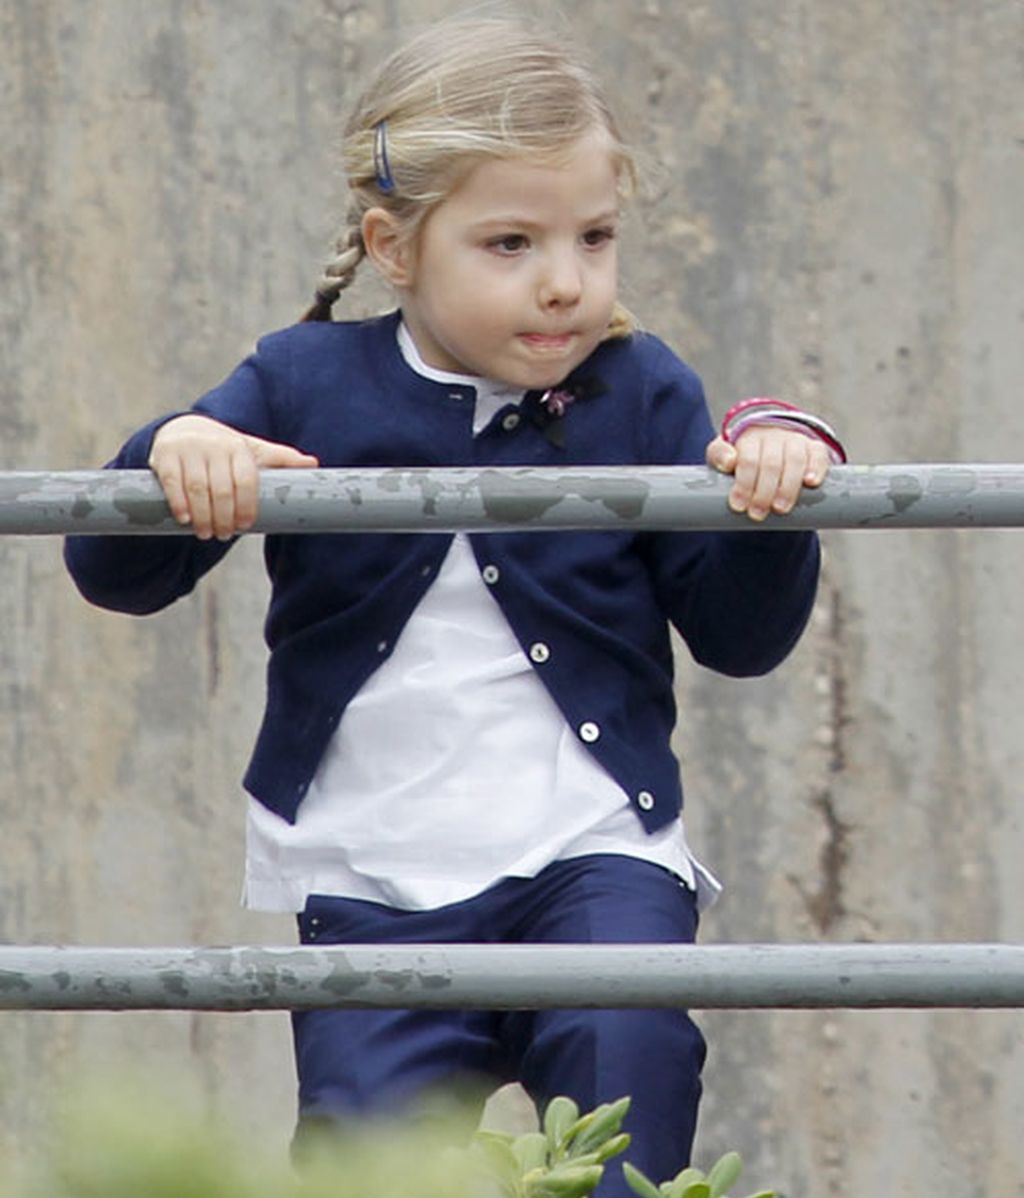 La reina, los príncipes de Asturias y las infantas, en el zoo